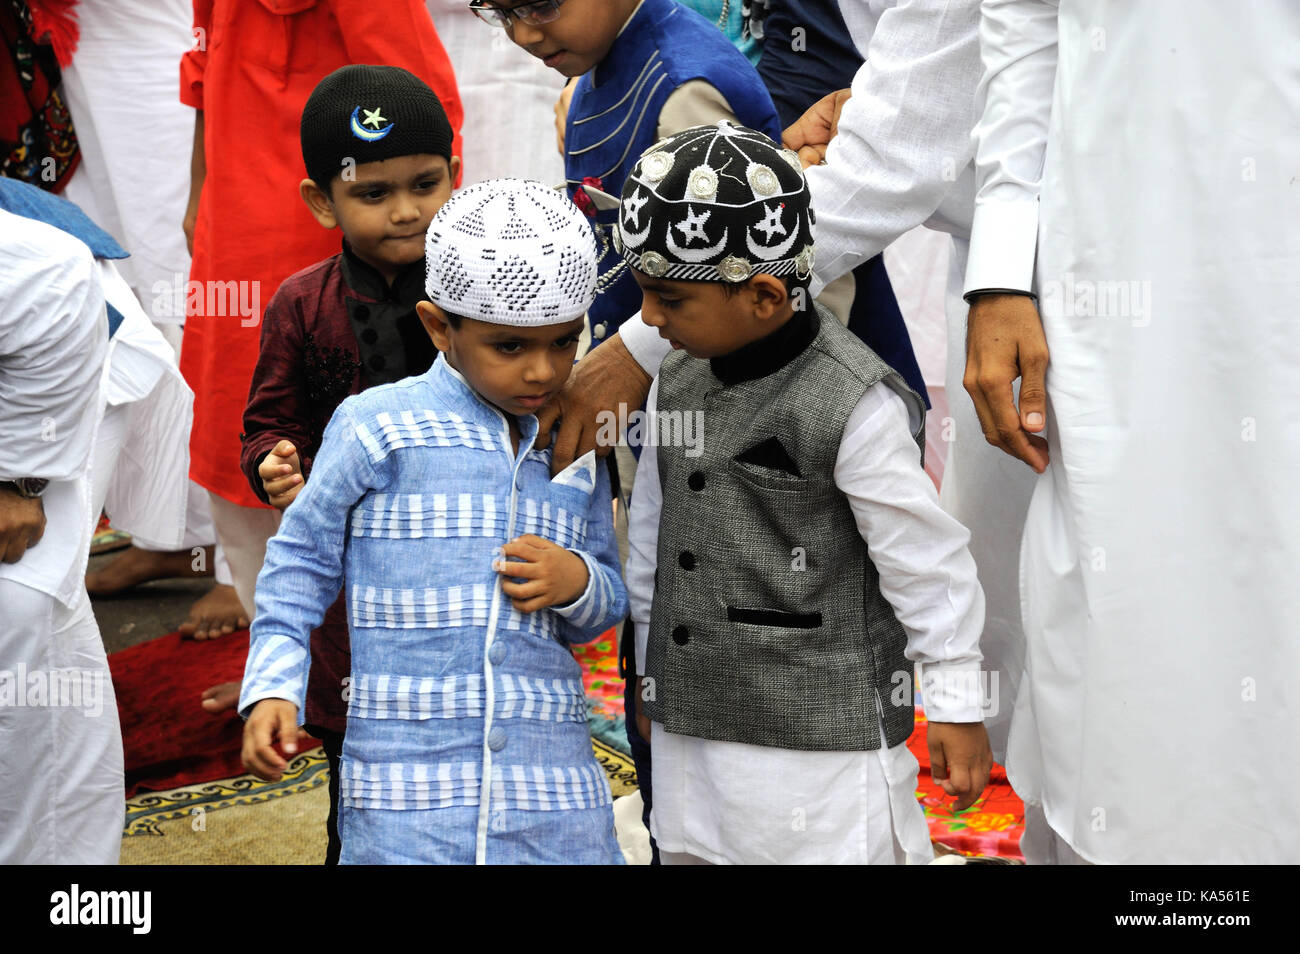 People celebrating Eid ul Fitr festival, Bandra, Mumbai, Maharashtra, Inde, Asie Banque D'Images